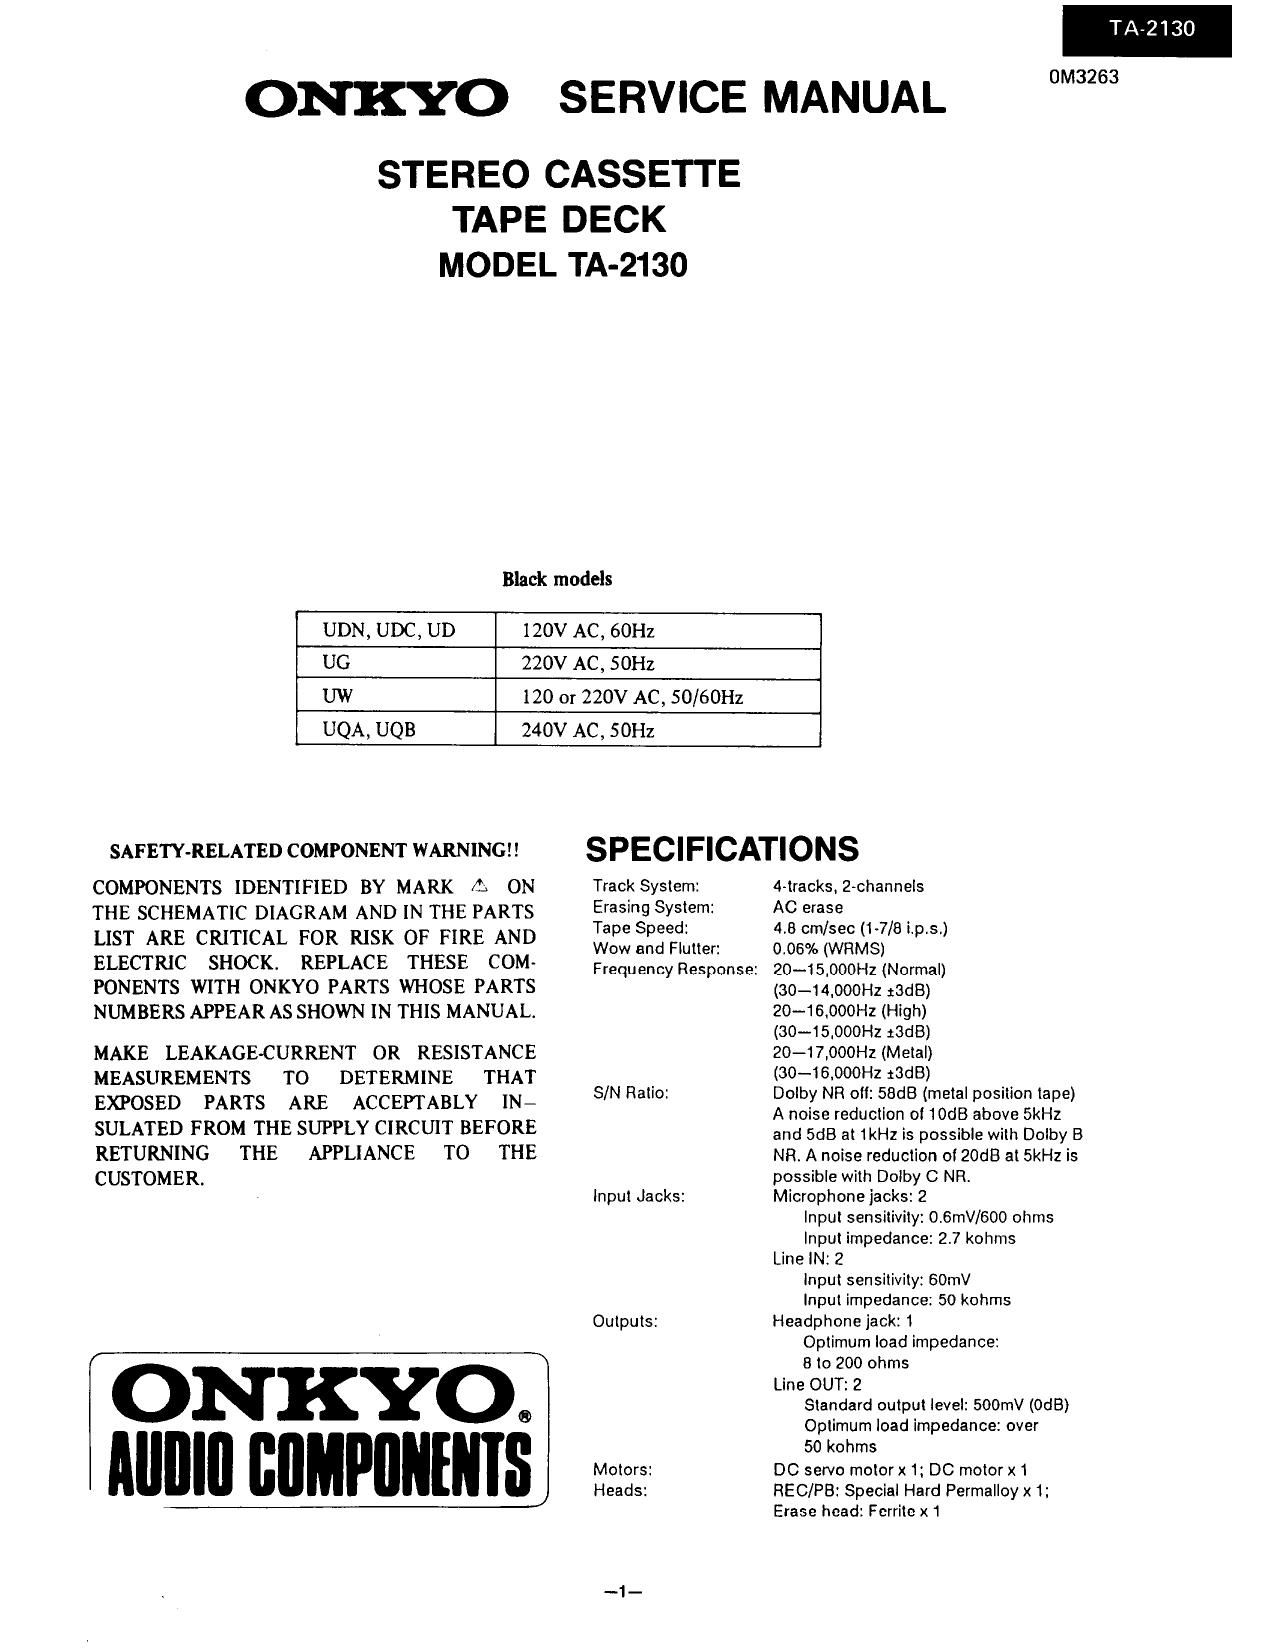 Onkyo TA 2130 Service Manual